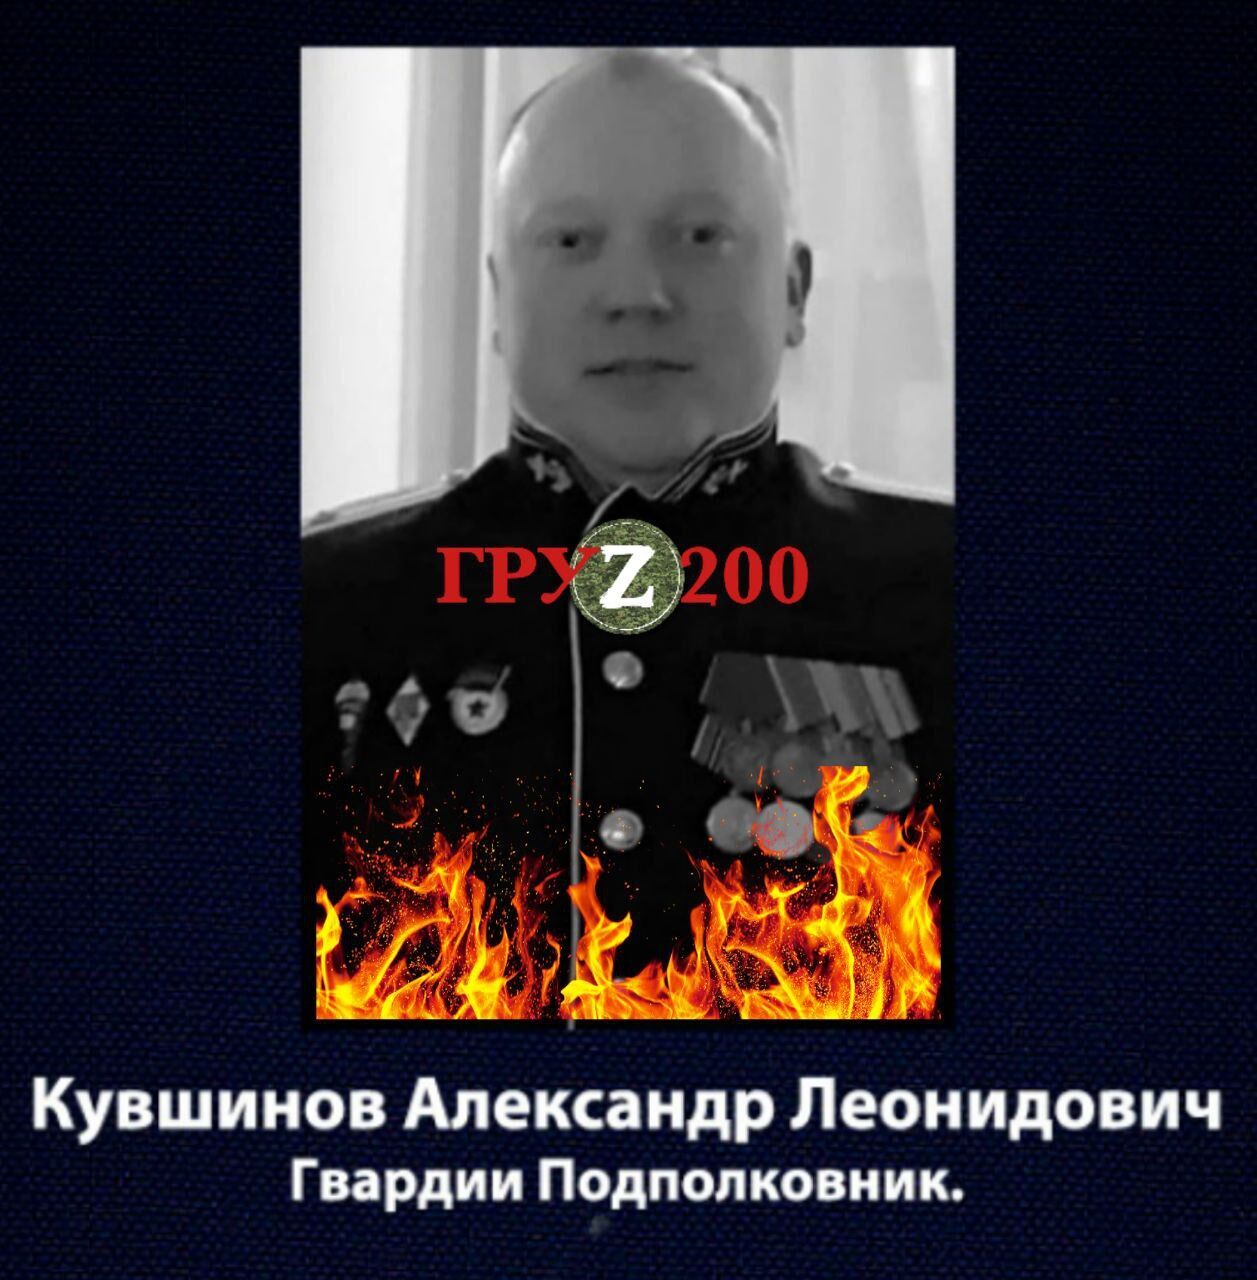 Олександр Кувшинов воював проти України